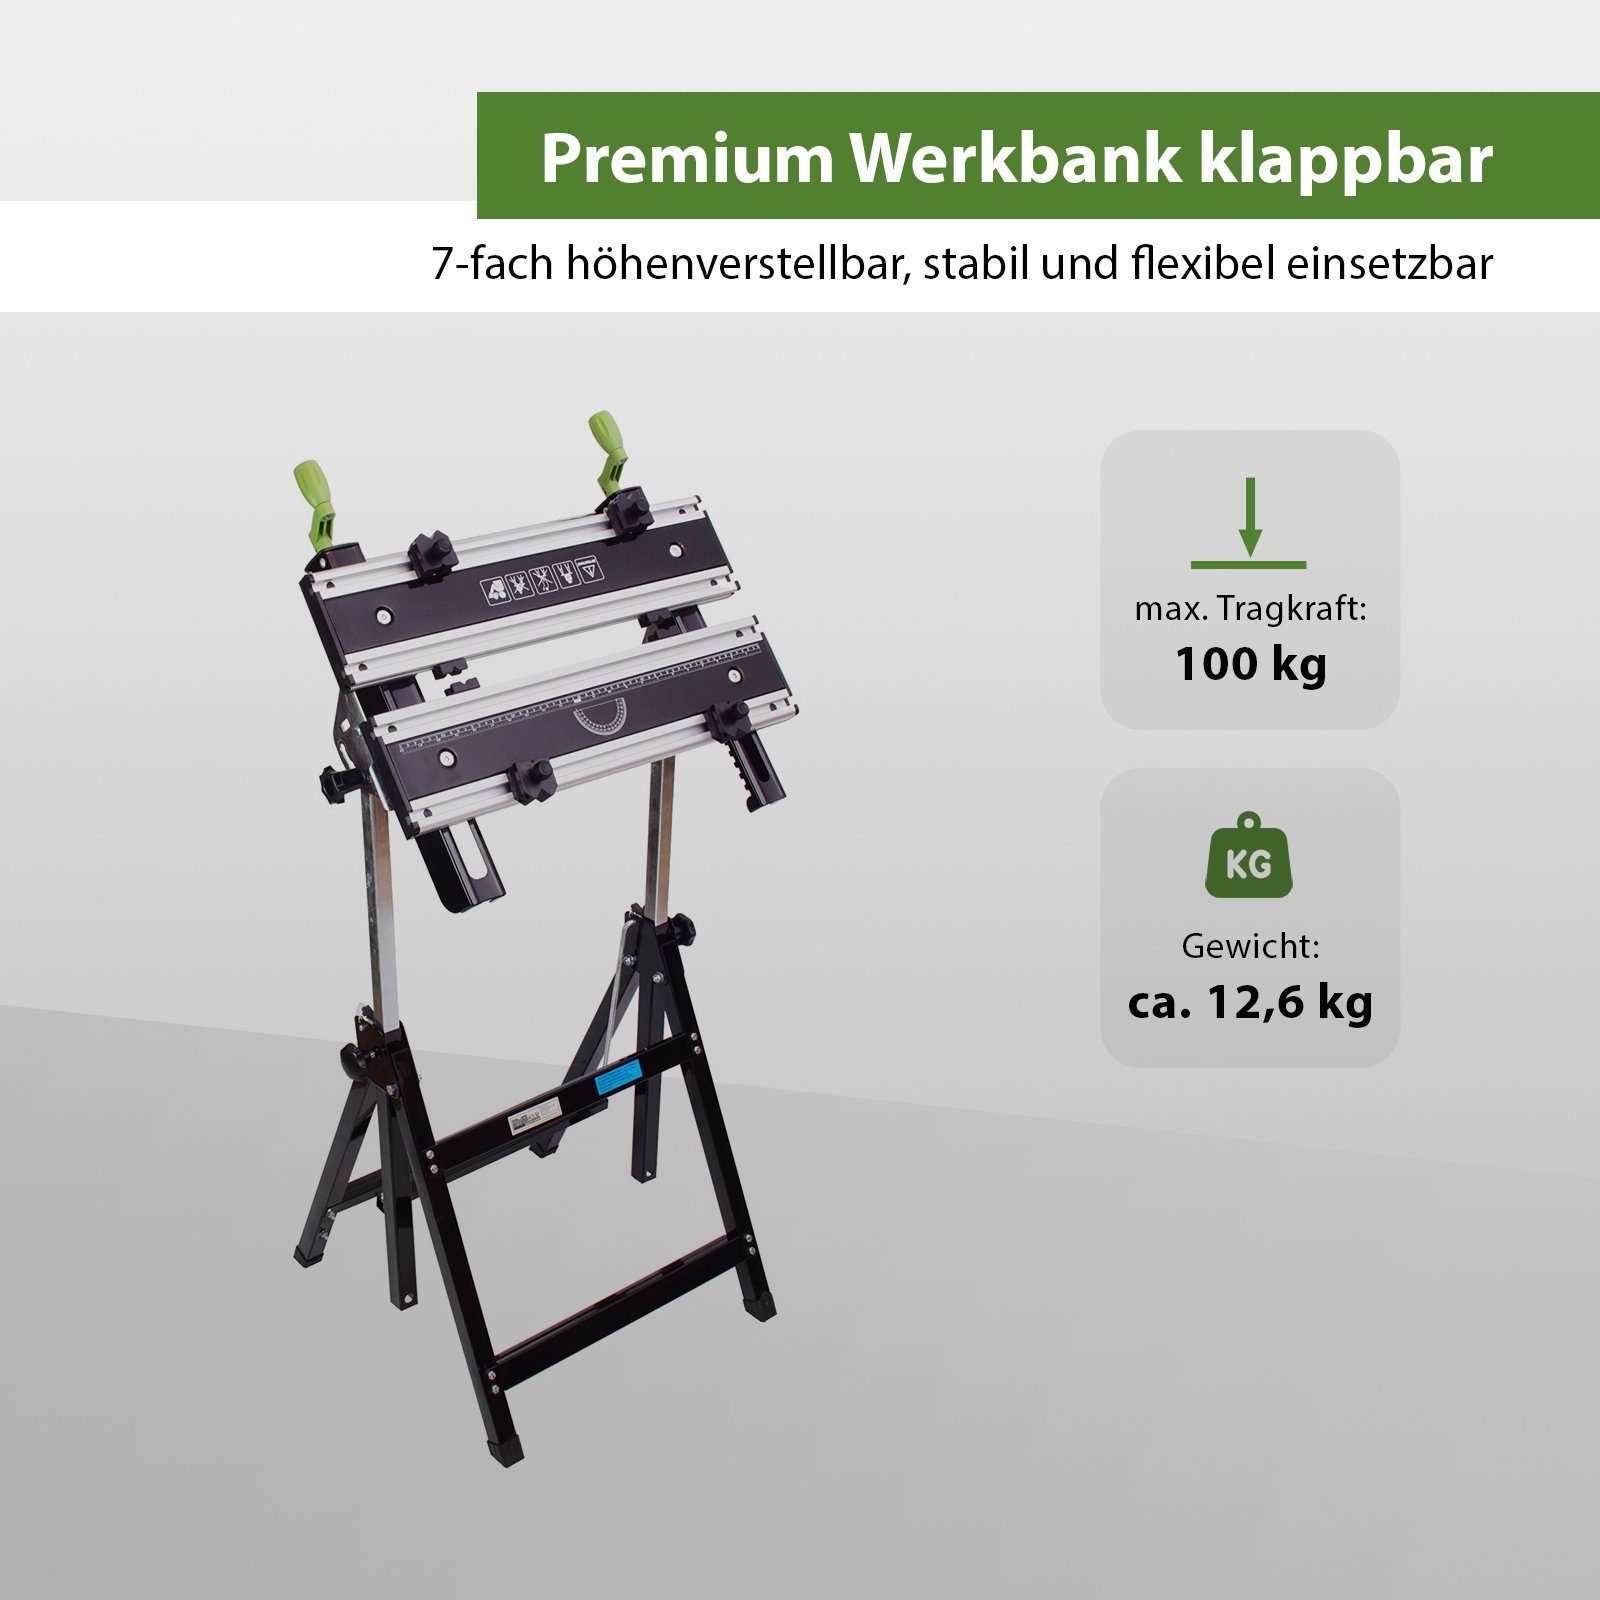 Metall klappbar Werktisch Werkbank Premium TRUTZHOLM Profi Alu, Werkbank (Packung) höhenverstellbar